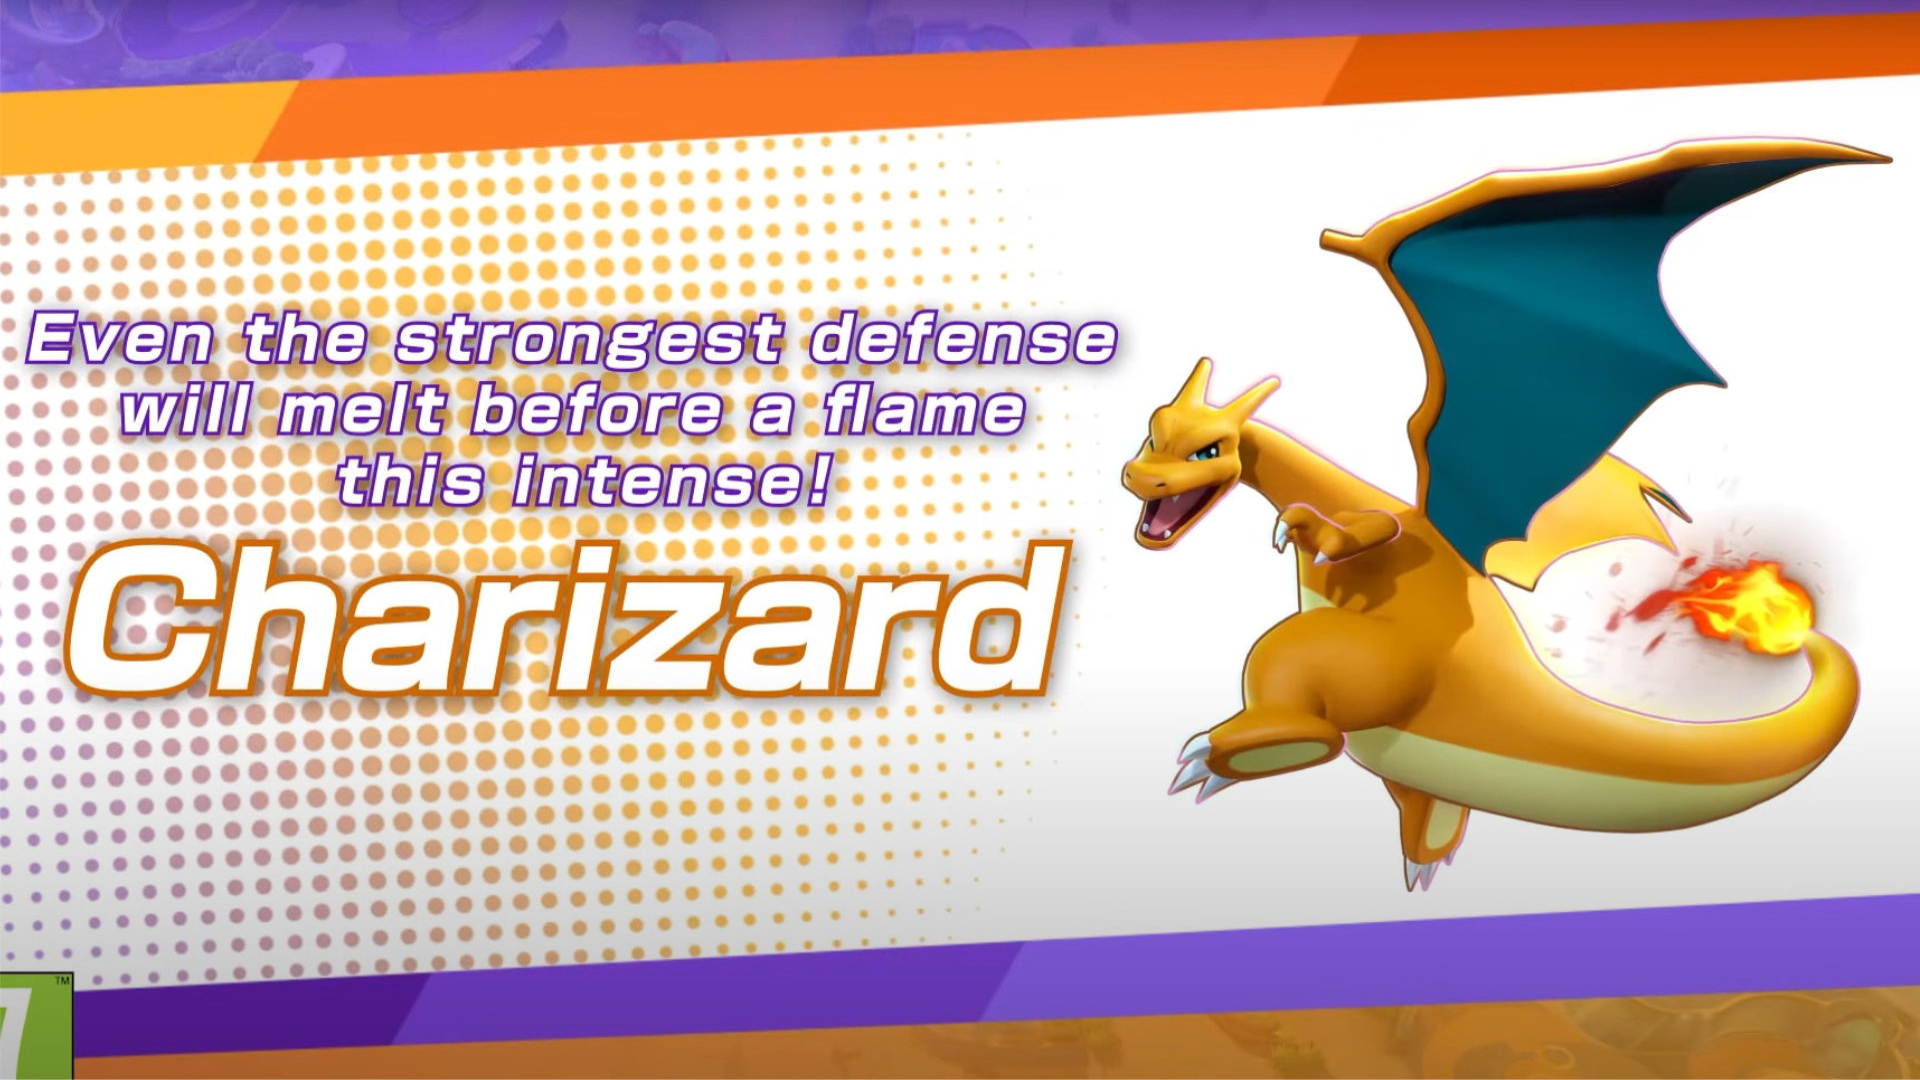 Charizard - Pokémon Unite